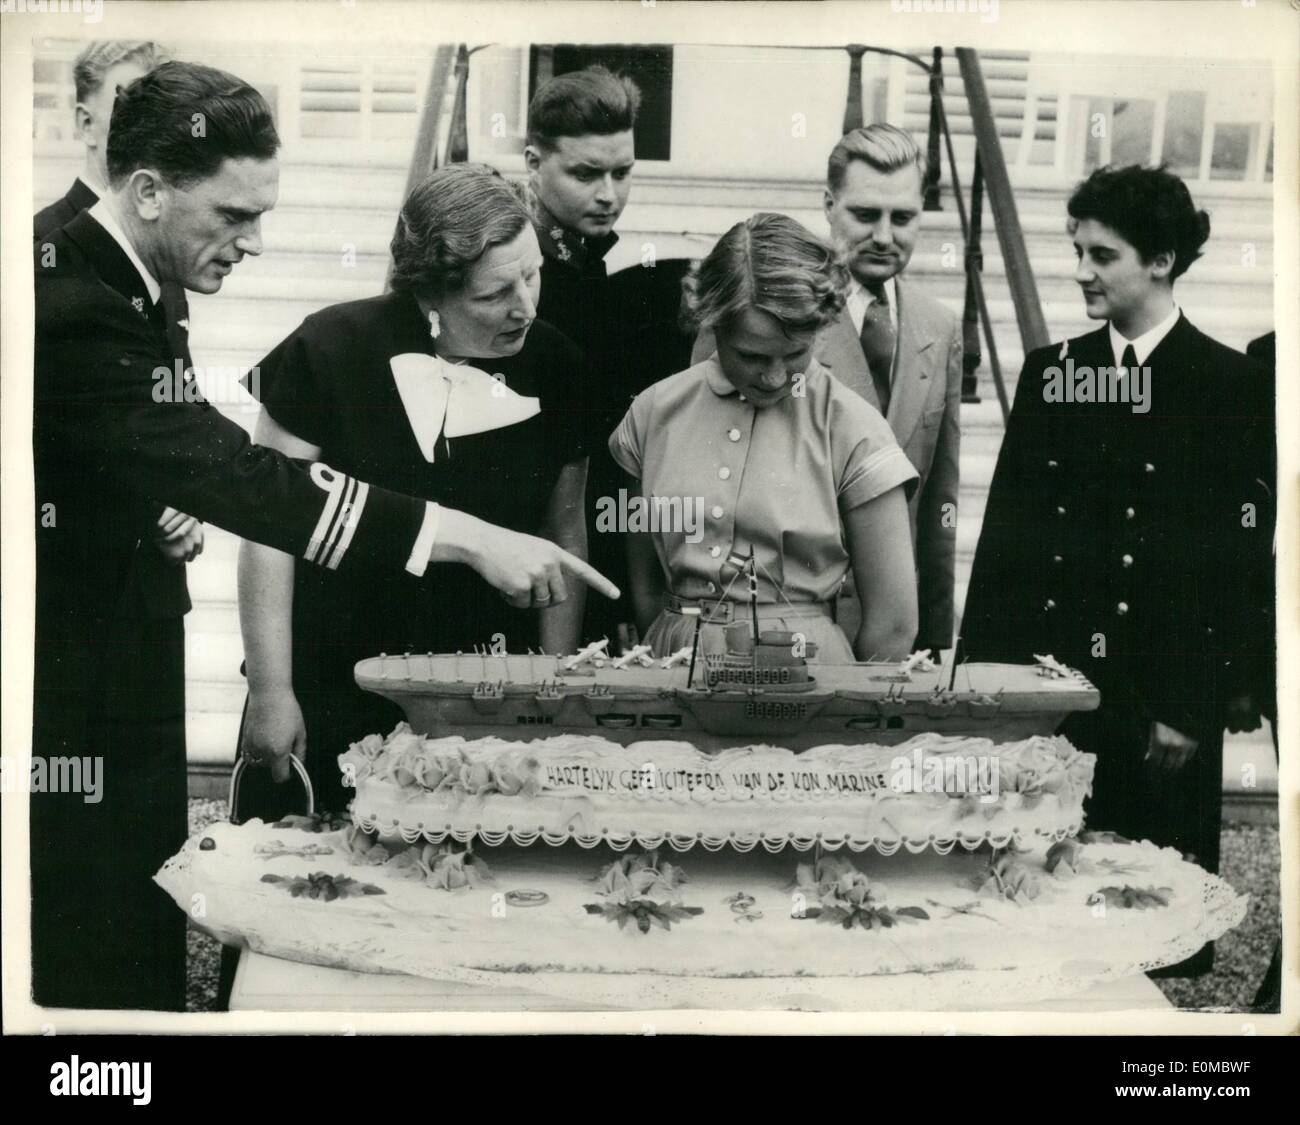 08 août, 1954 - La princesse Irène des Pays-Bas célèbre son quinzième anniversaire - avec gâteau d'anniversaire unique. : accompagné de Mère la Reine Juliana - la princesse Irène des Pays-Bas admire un gâteau d'anniversaire unique sous la forme de la fosse porte-avions Karel Doorman - au cours de son 15e anniversaire à Amsterdam, le gâteau a été présenté à elle par la Marine royale néerlandaise. Banque D'Images